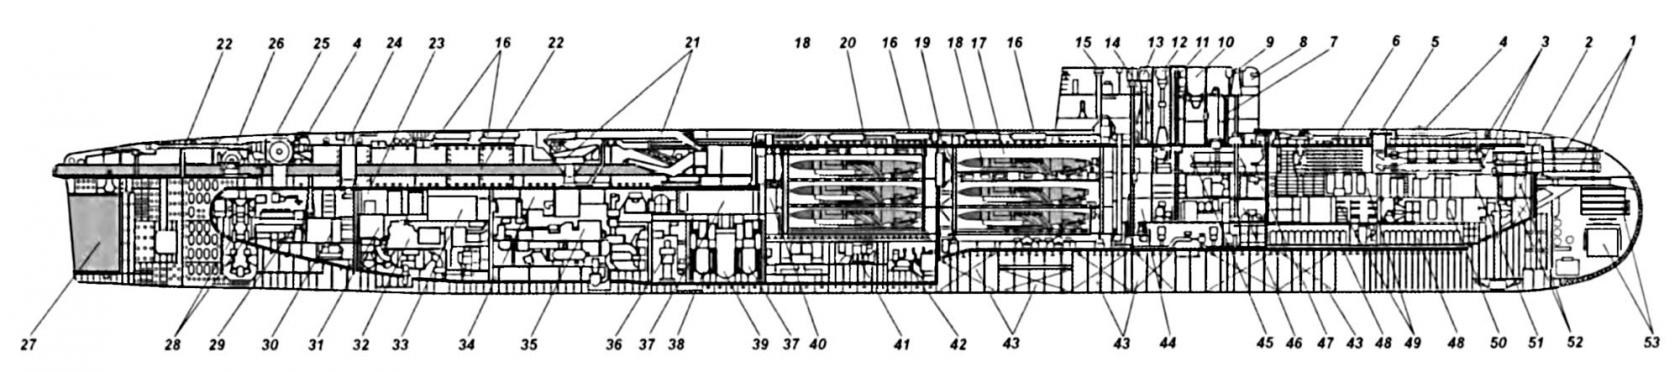 Транспортная атомная подводная лодка проекта 664. СССР